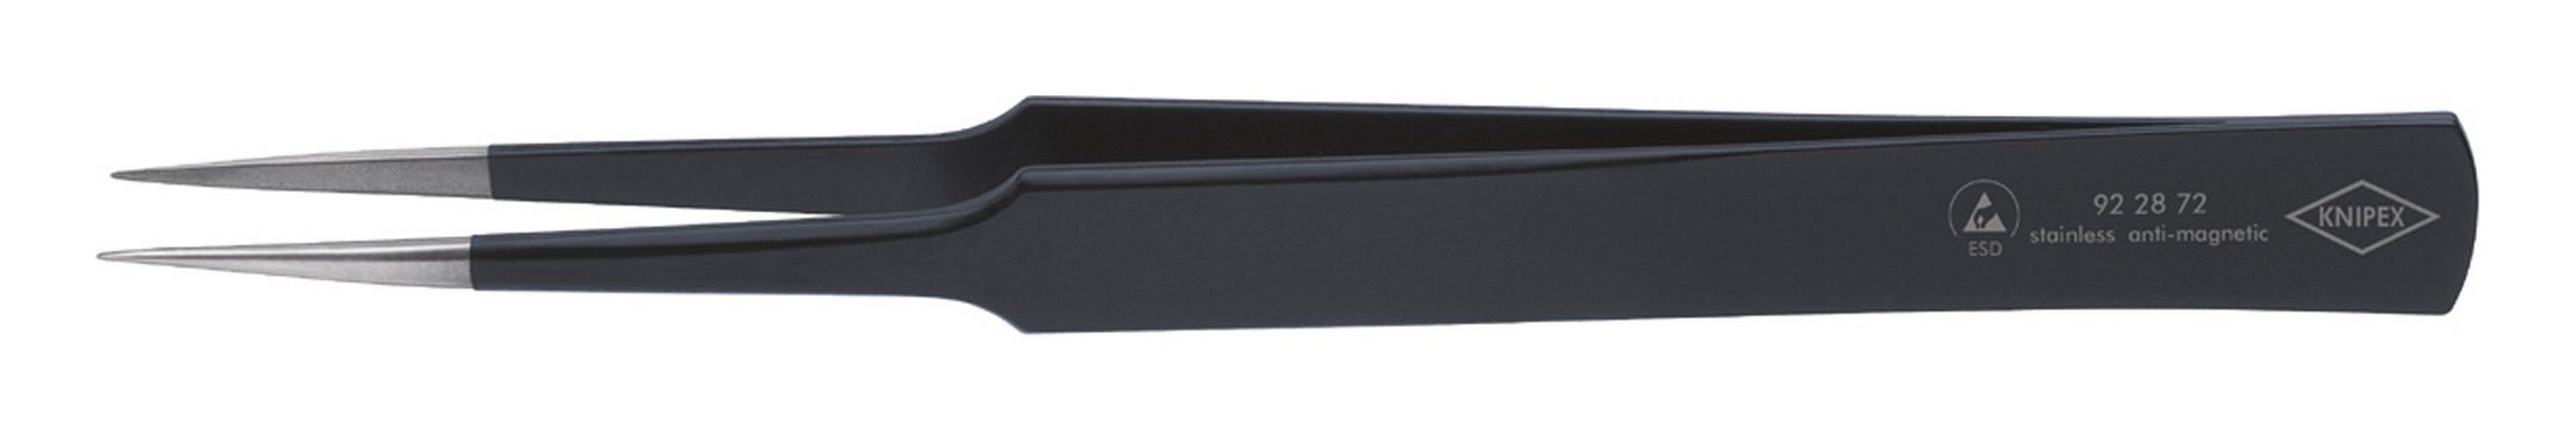 Knipex Pinzette, ESD US-Nadelform 135 mm schwarz | Pinzetten